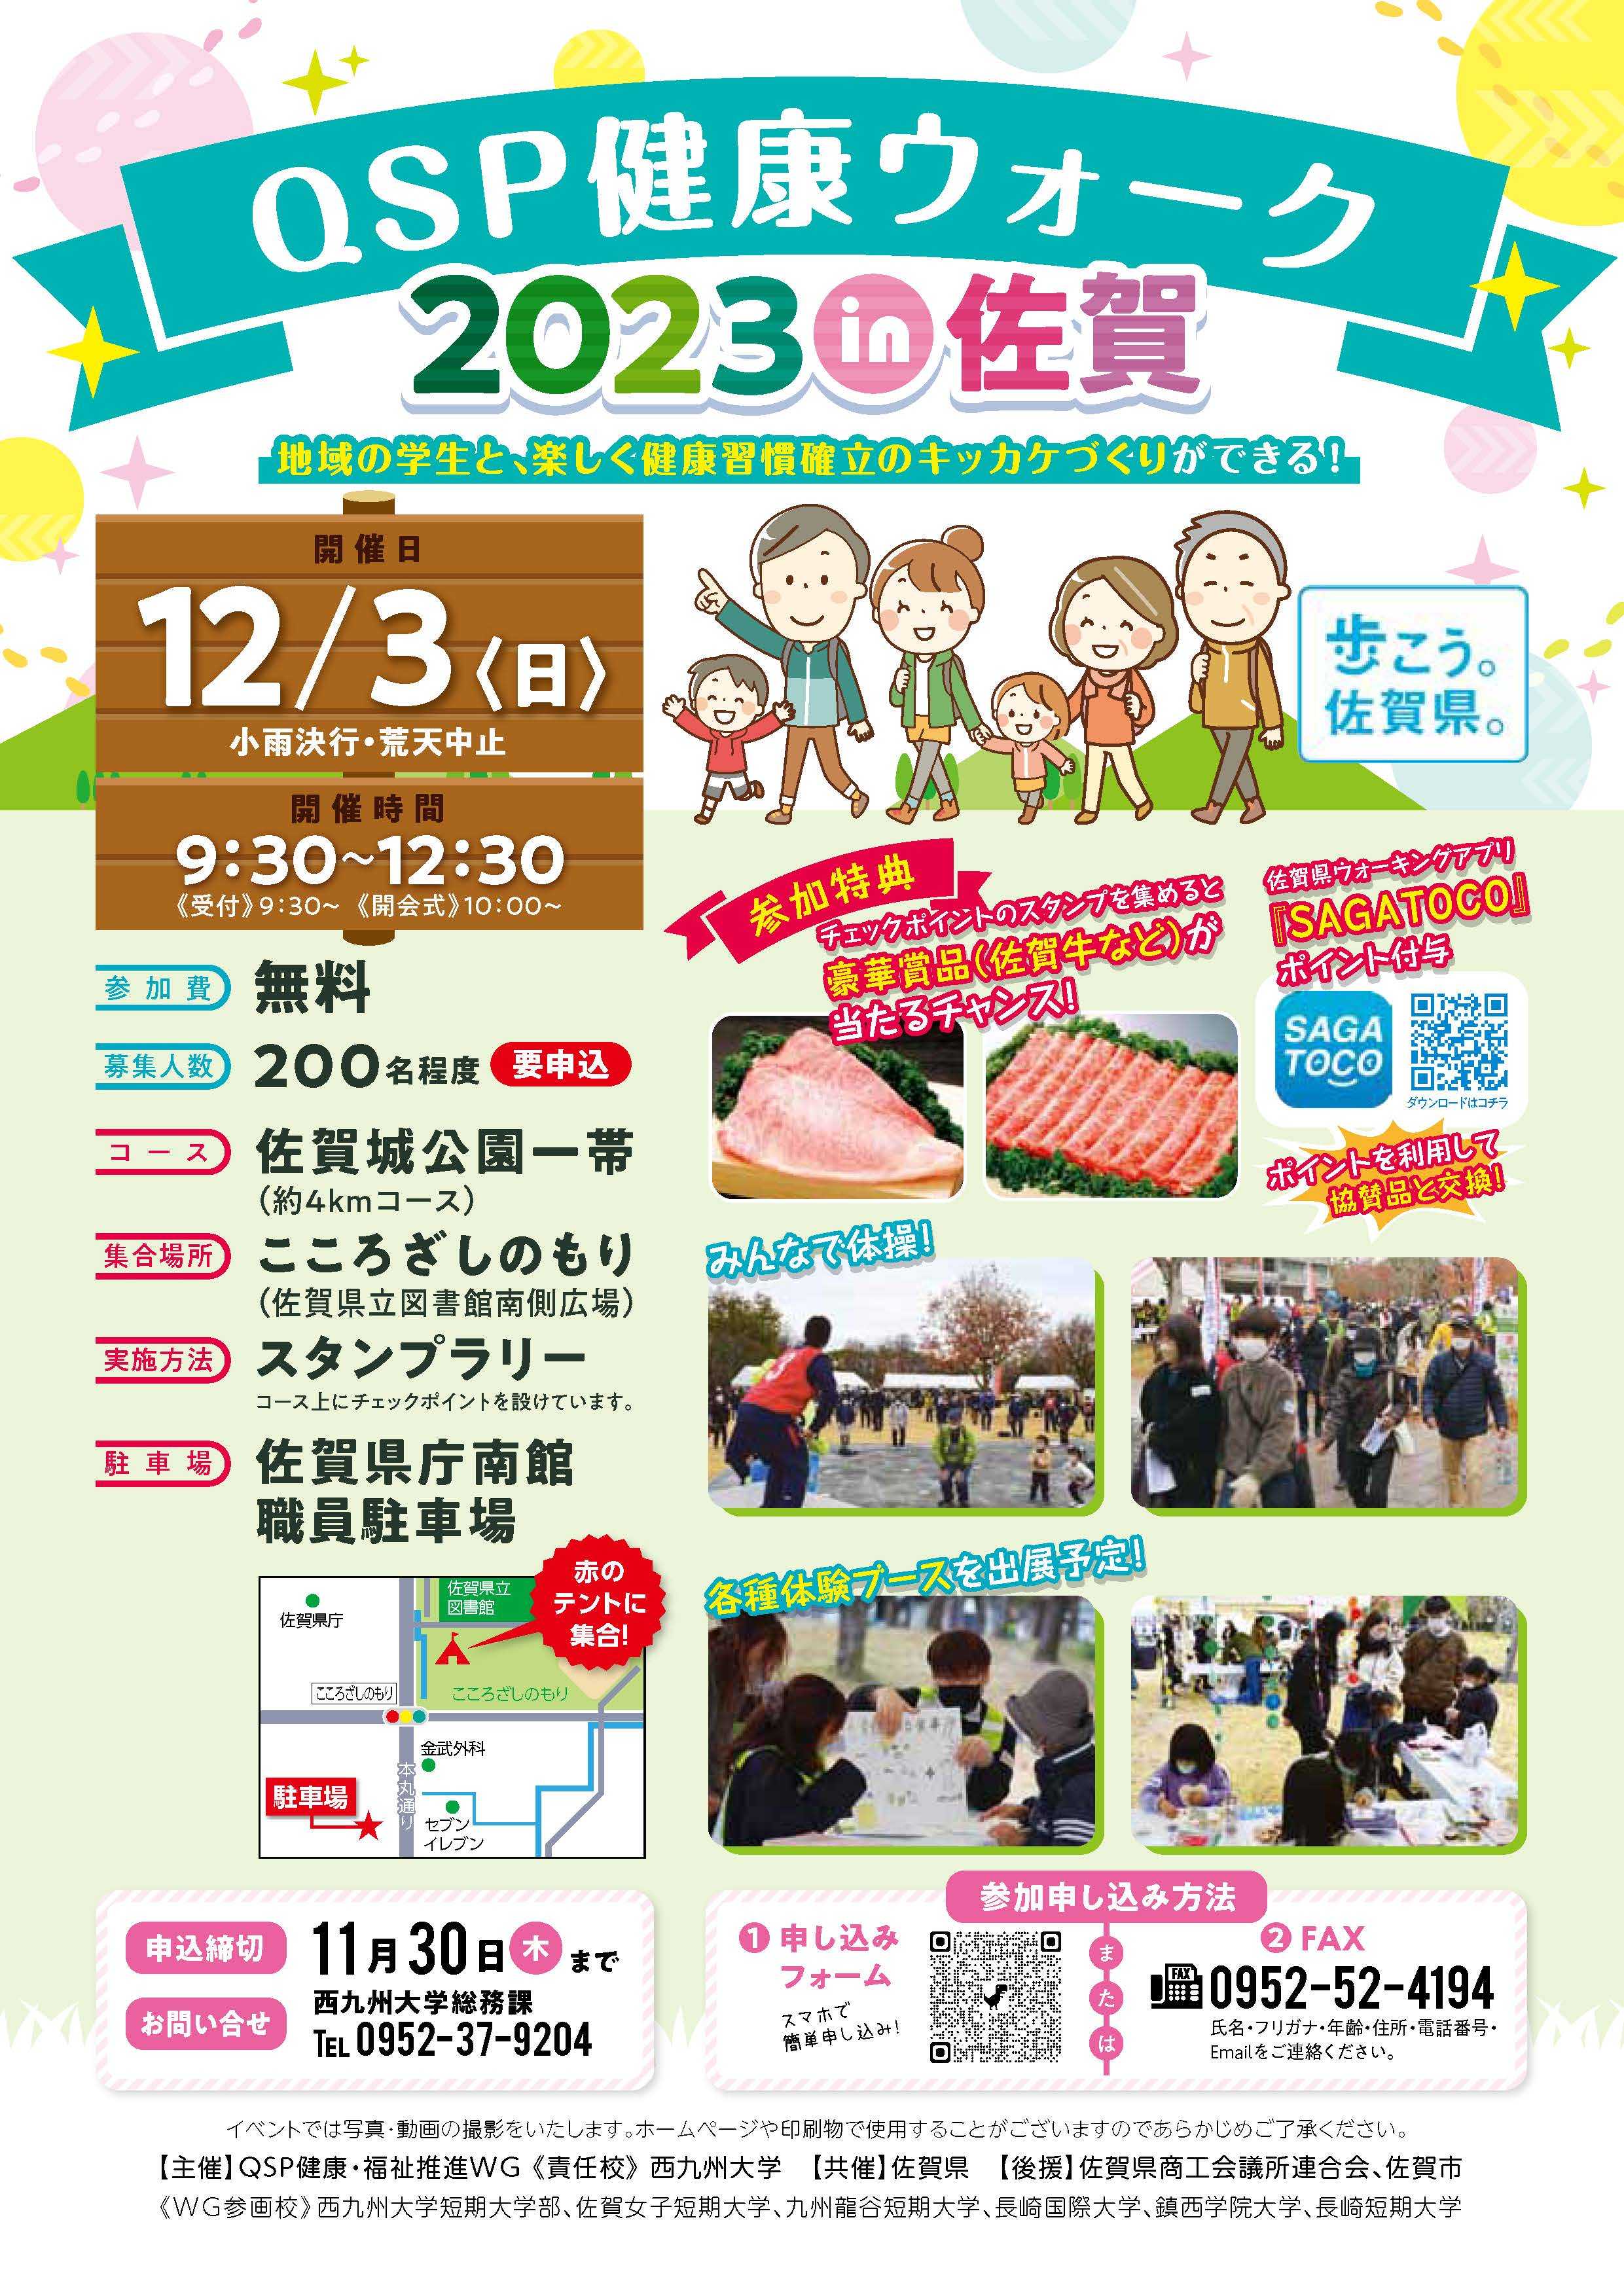 【健康・福祉推進】『QSP健康ウォーク2023 in 佐賀』を開催します。